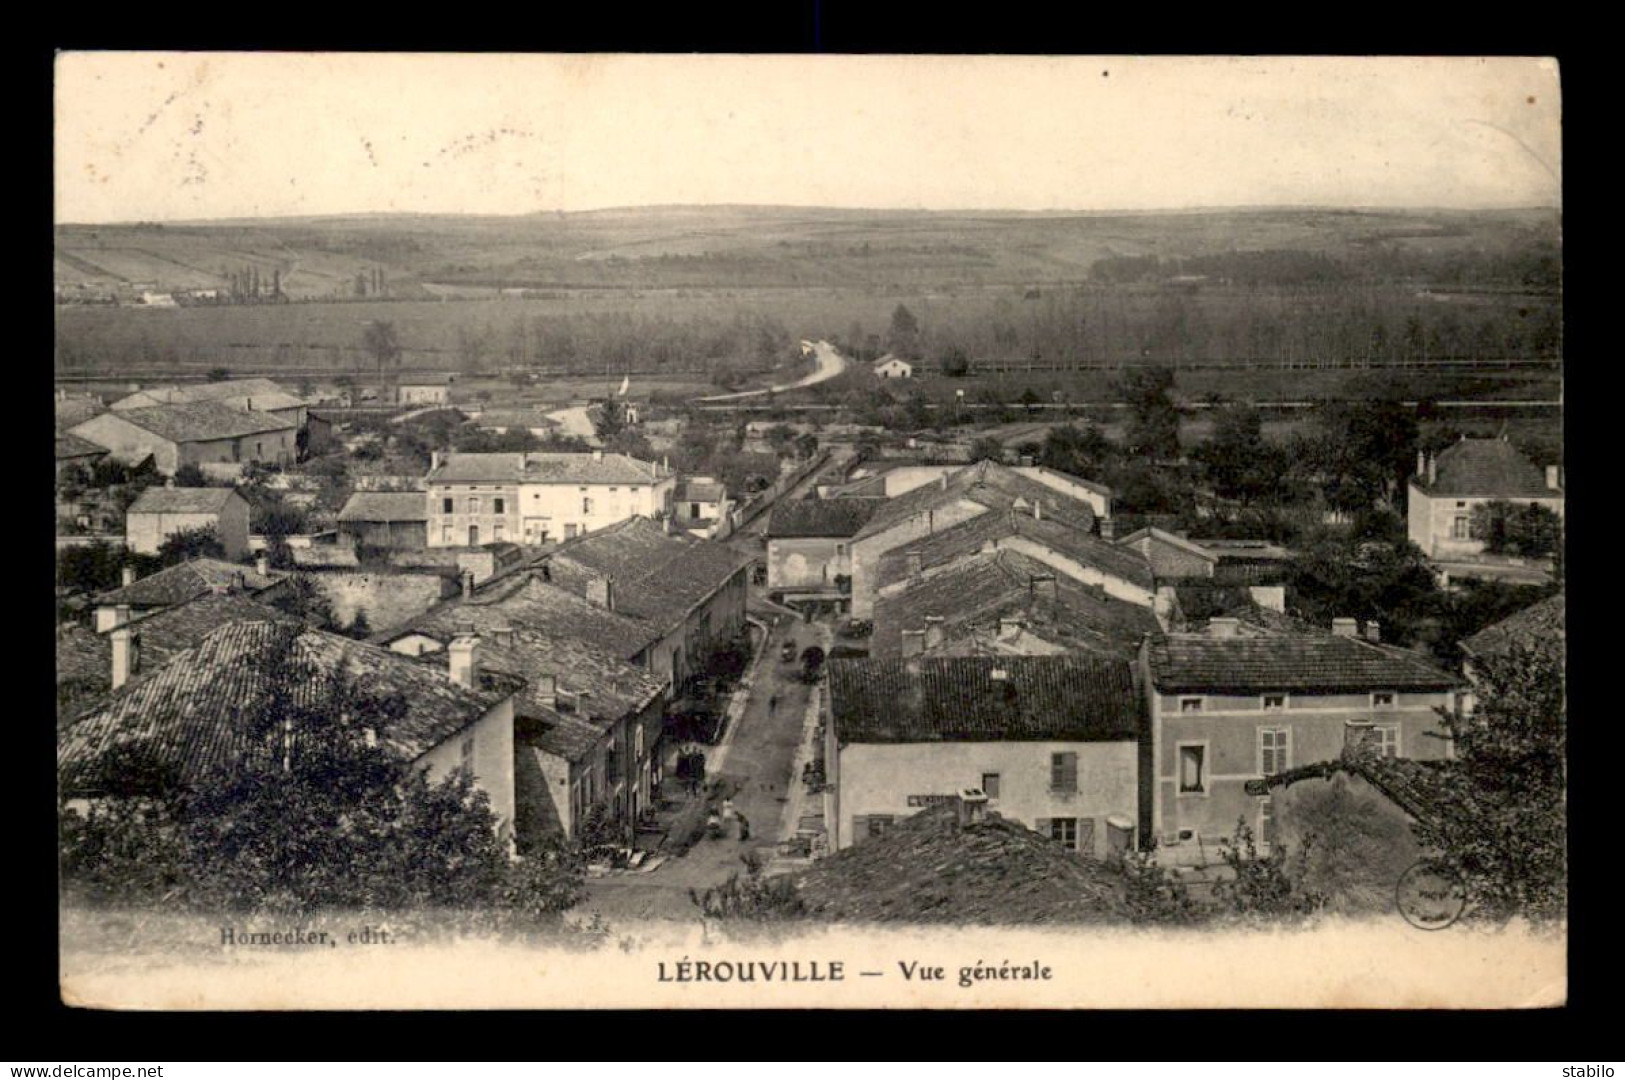 55 - LEROUVILLE - VUE GENERALE - EDITEUR HORNECKER - Lerouville